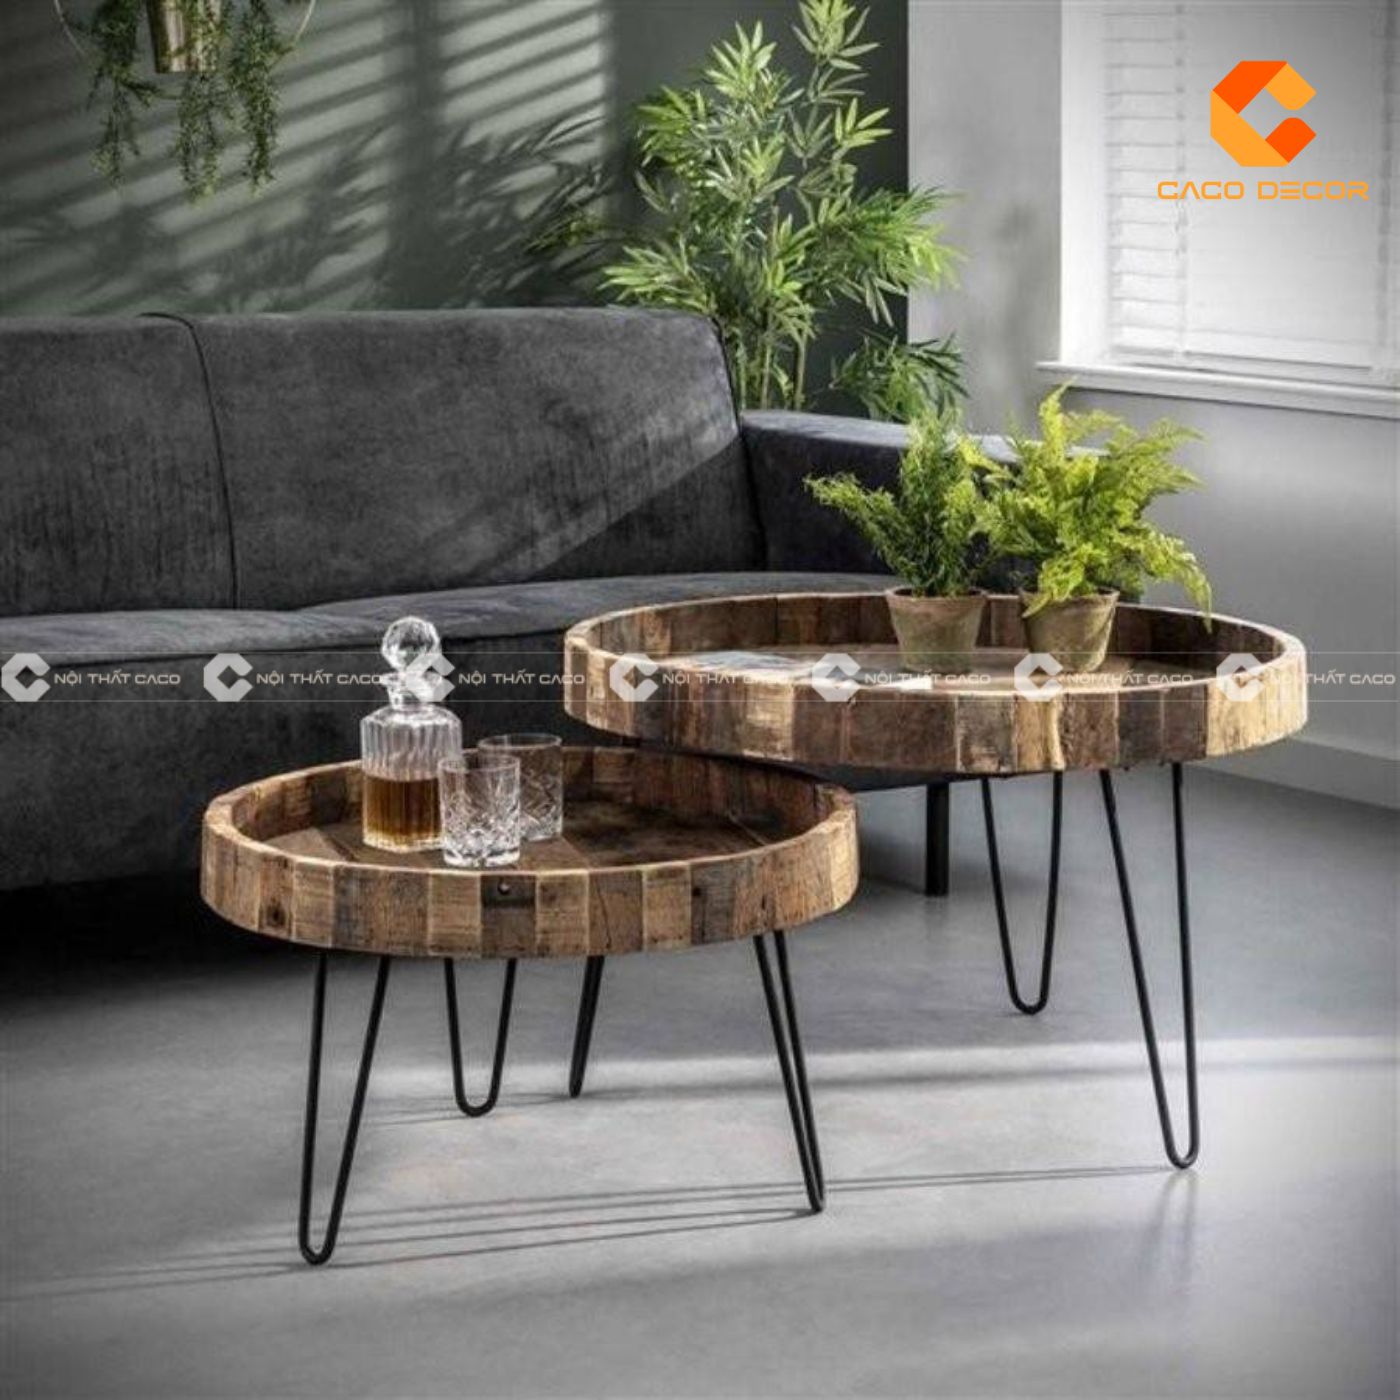 Mẫu bàn trà chân sắt mặt gỗ đầy “cuốn hút” cho phòng khách 2